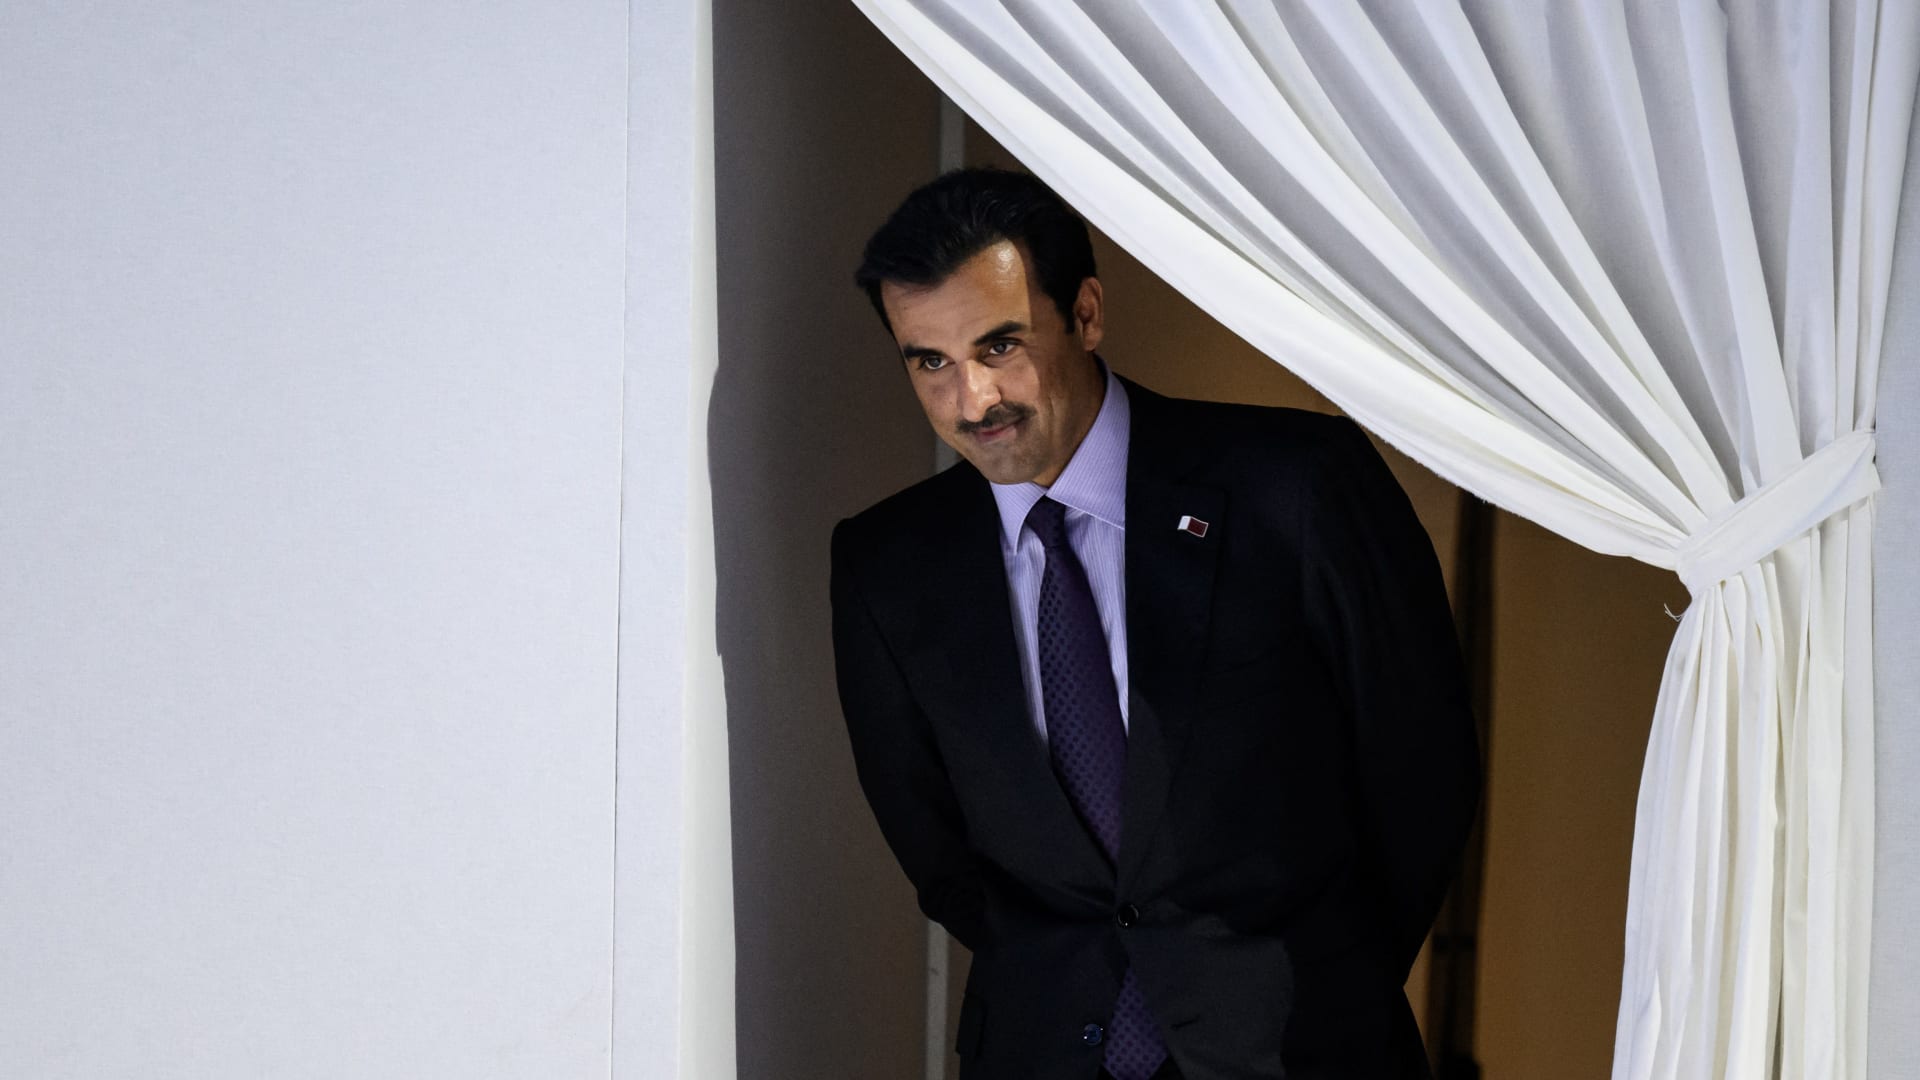 لحظة هبوط طائرة أمير قطر إلى السعودية بعد فتح الحدود والمصالحة الخليجية